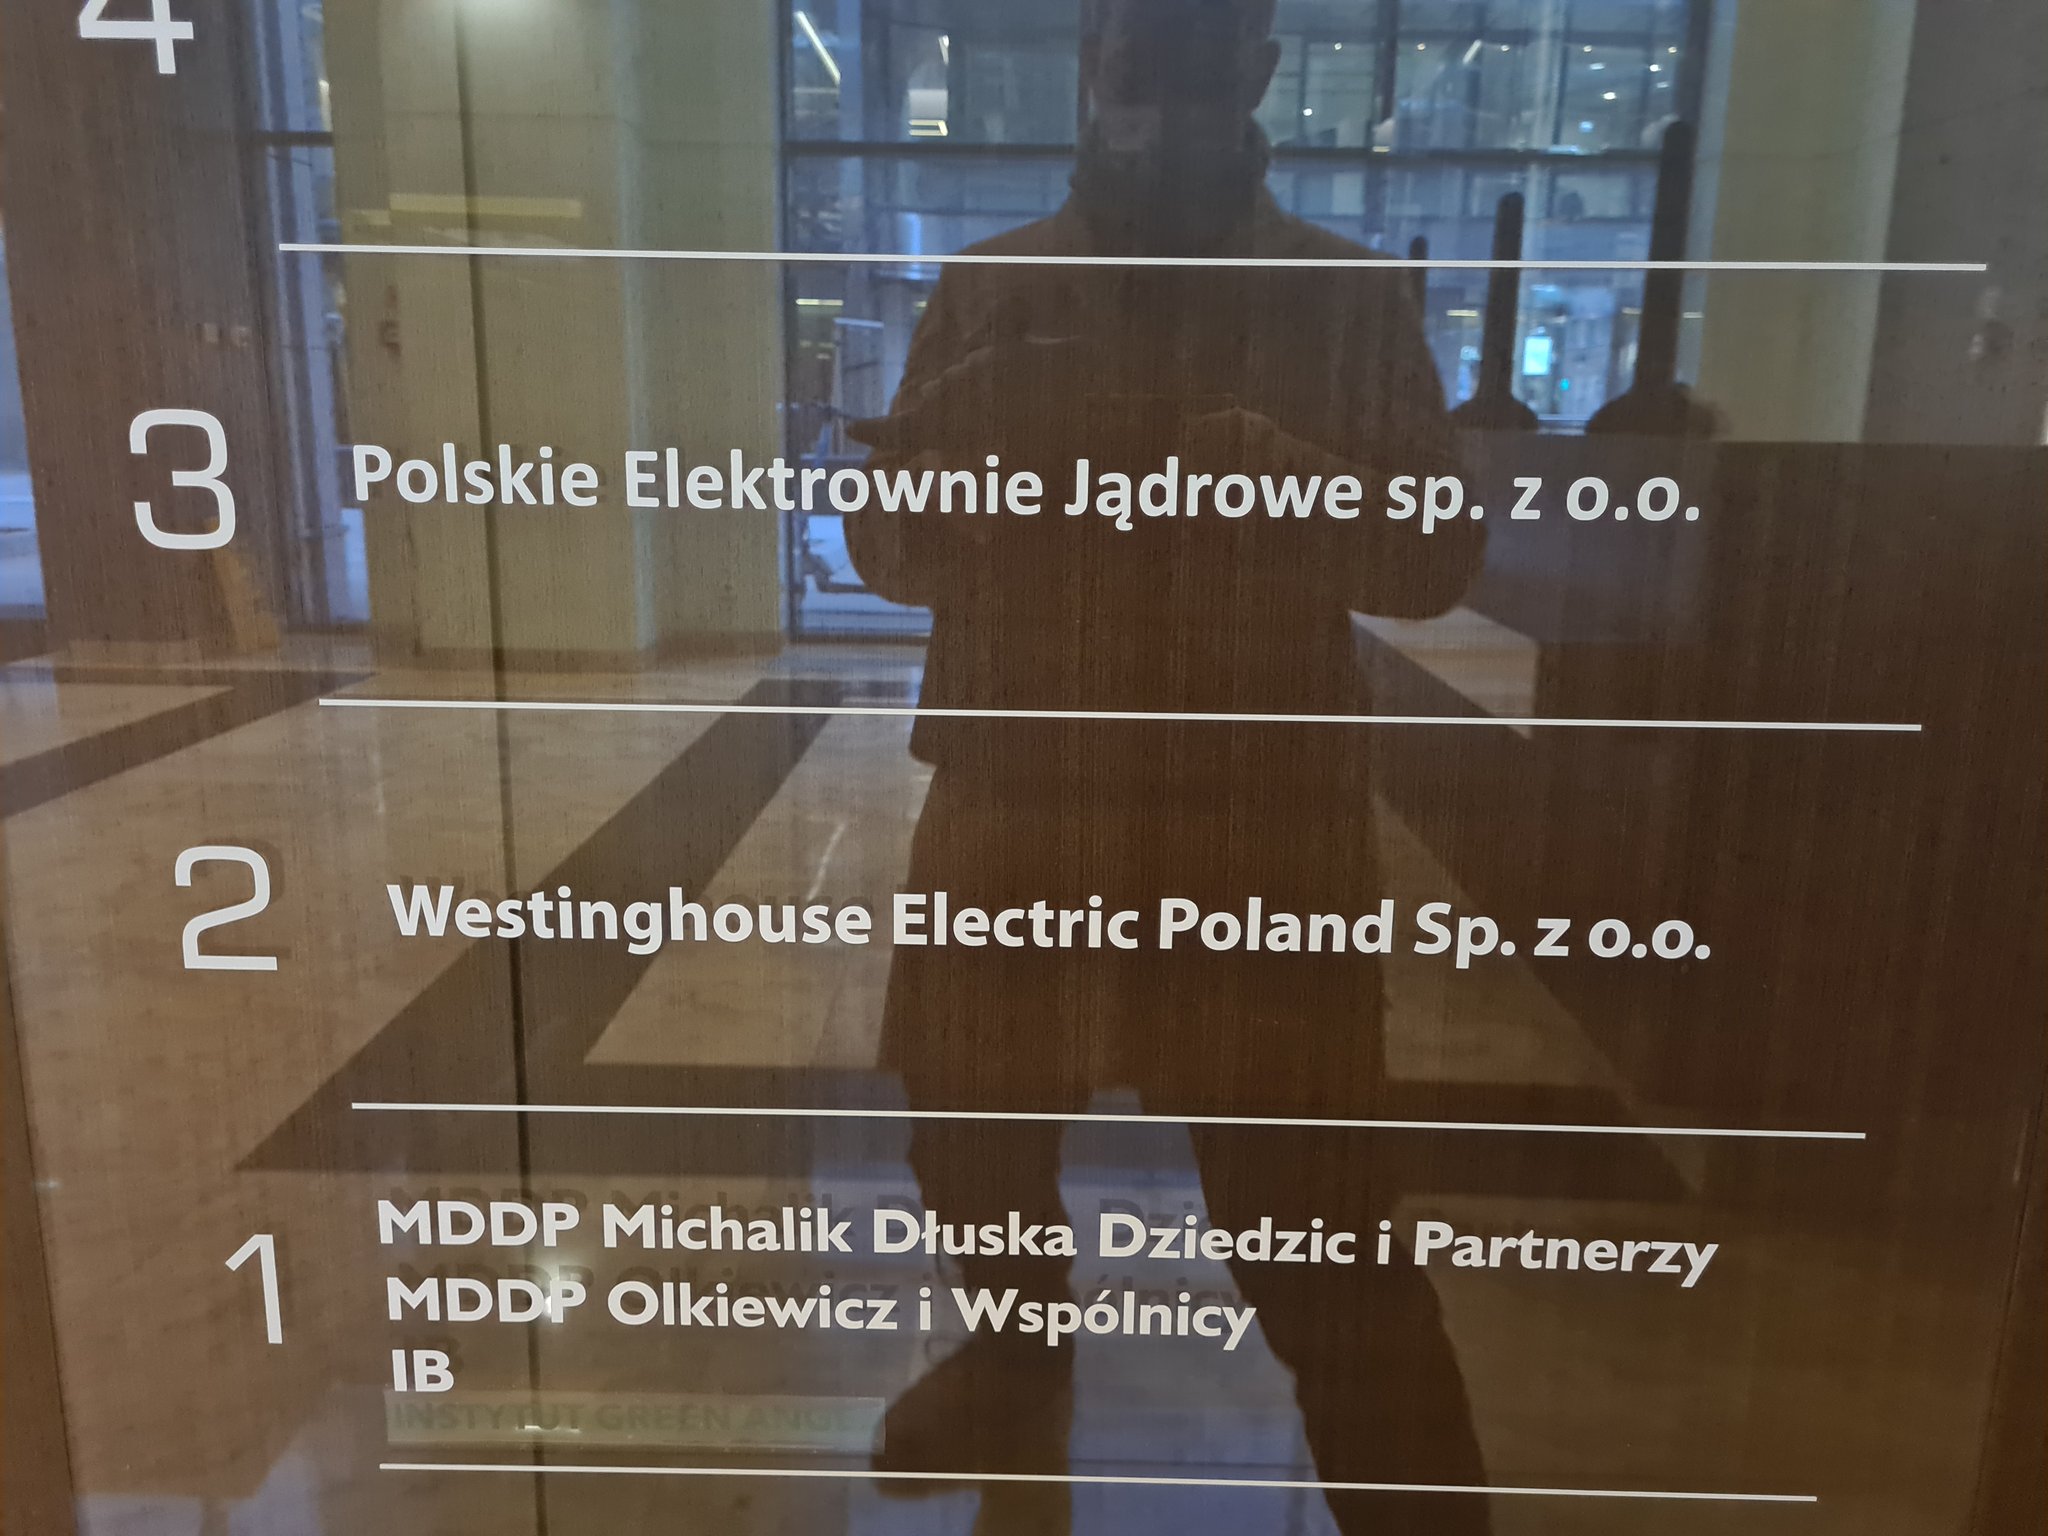 Polskie-Elektrownie-Jadrowe-i-Westinghouse-w-Warszawie